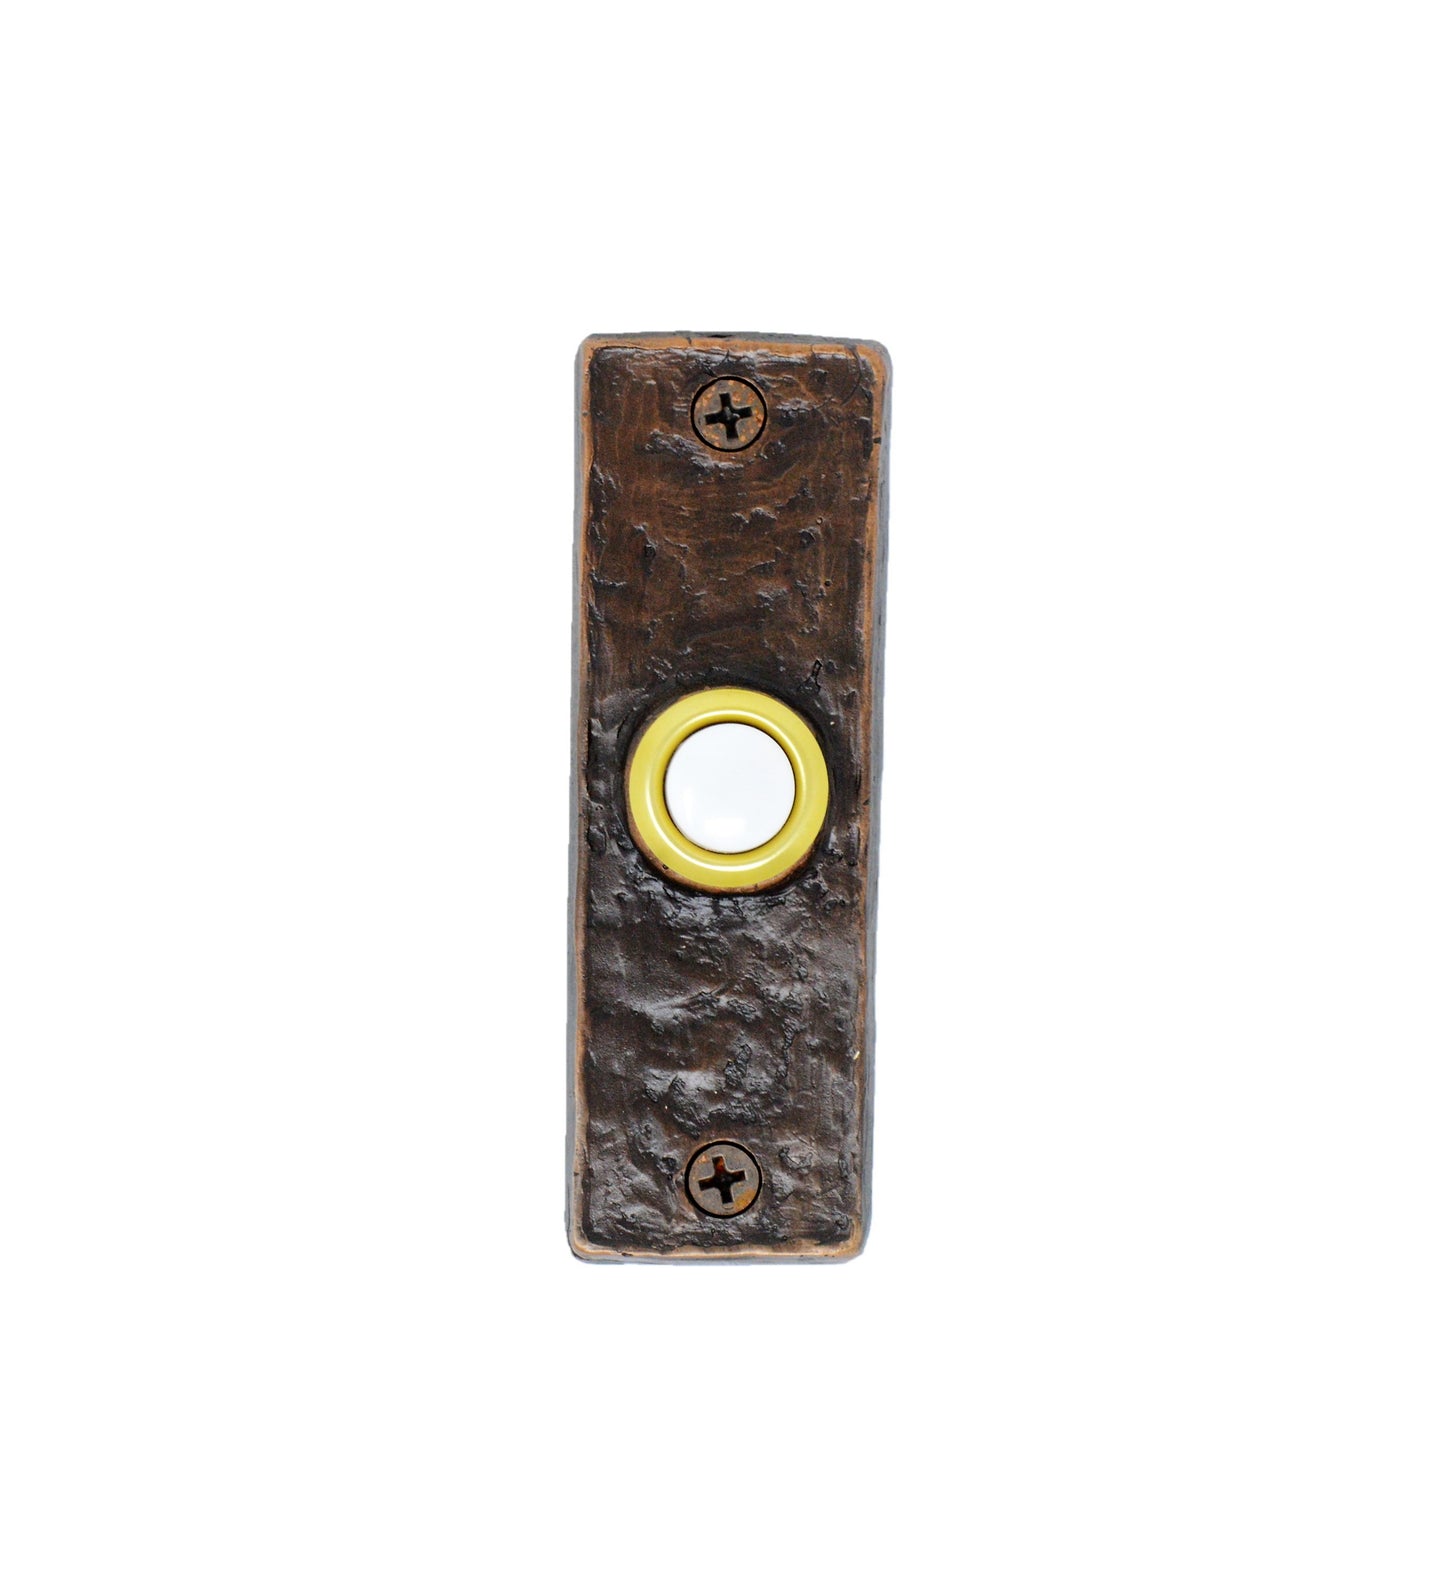 Slim classic bronze doorbell - patina